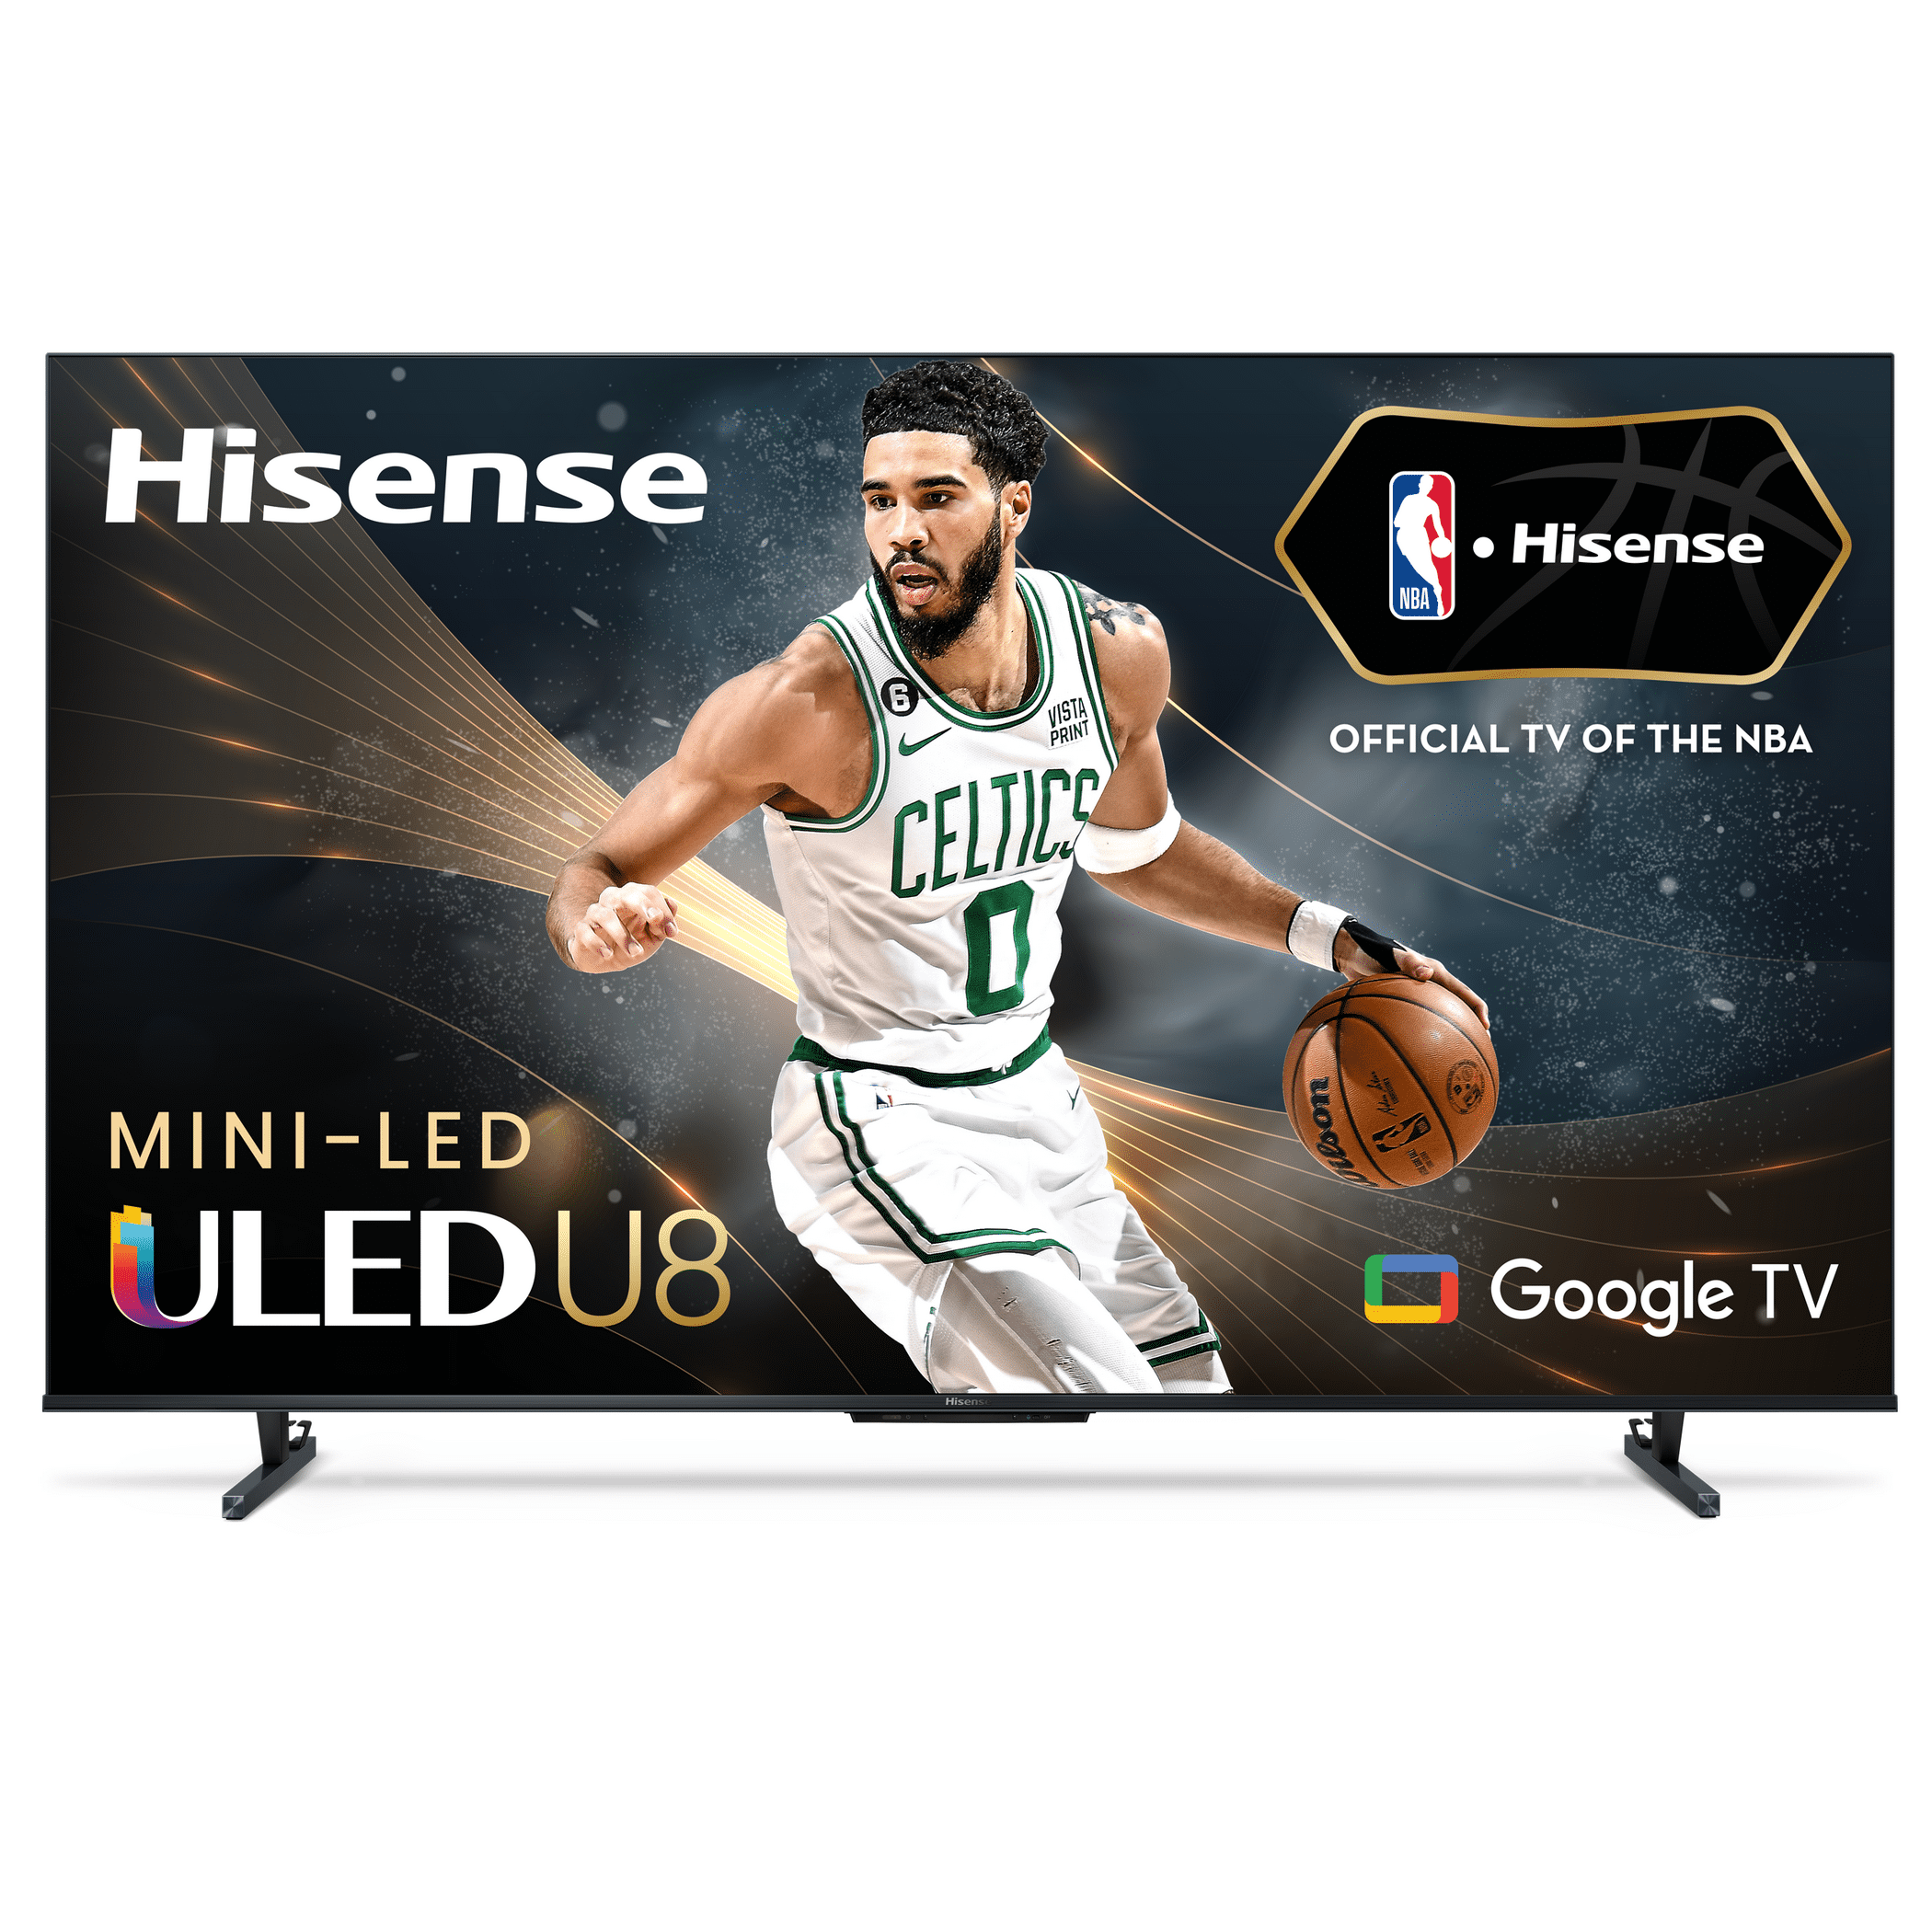 Hisense 100L5G-DLT100B 100-inch 4K Smart Laser TV, Including Hard